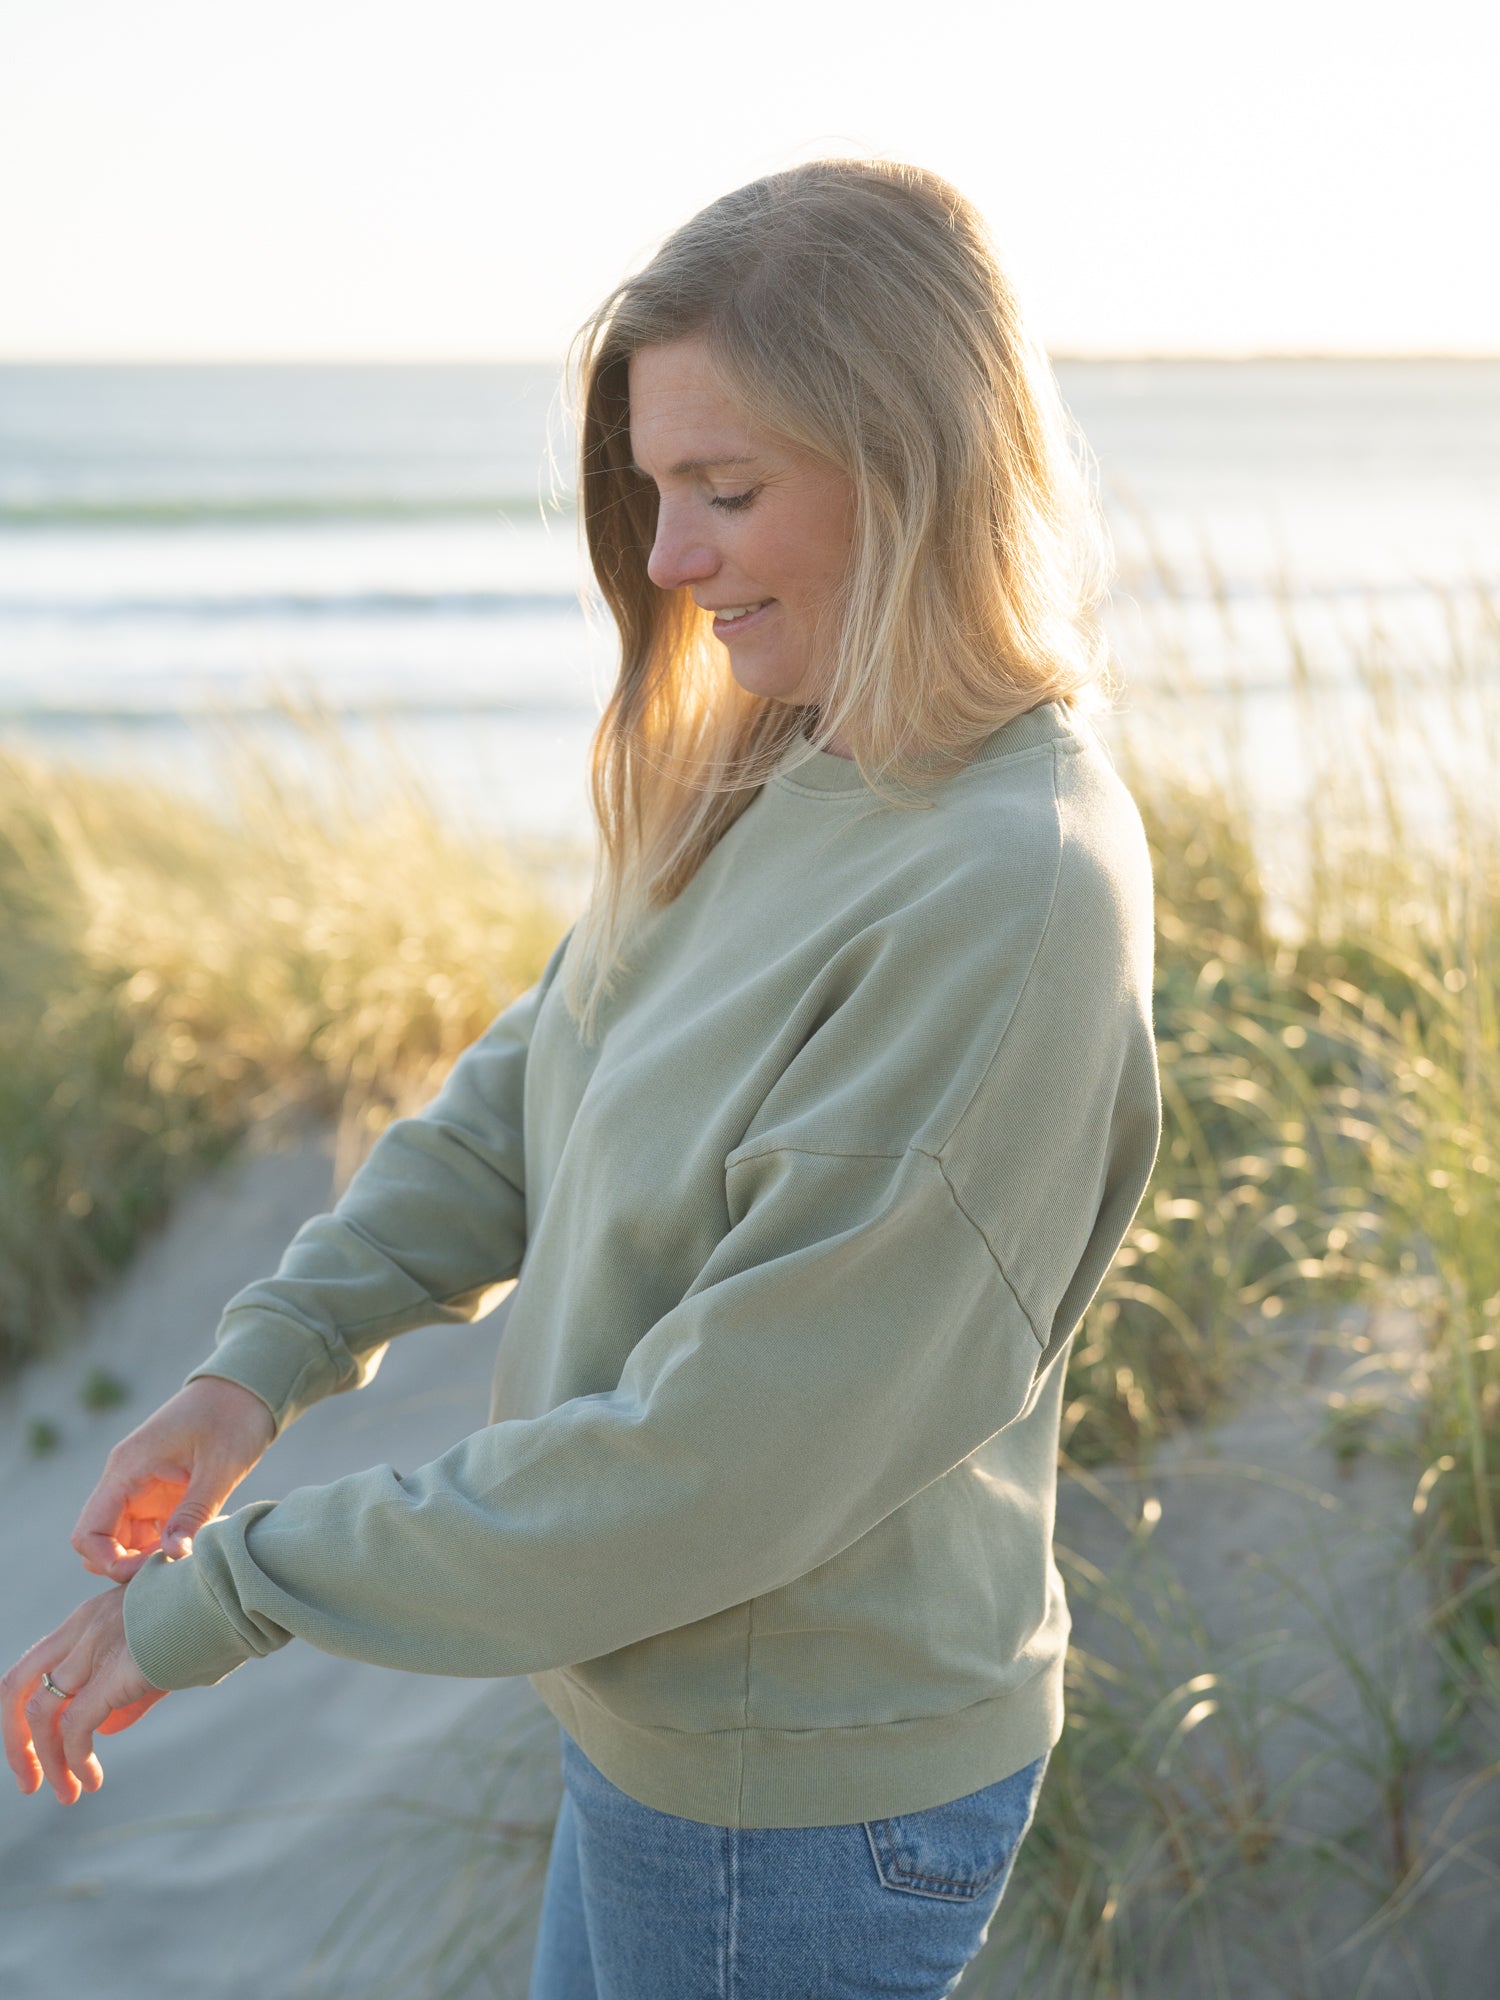 Nachhaltiger Fair Fashion Frauen Oversize Pullover natural dye 100% Biobaumwolle, GOTS zertifiziert und Made in Portugal.